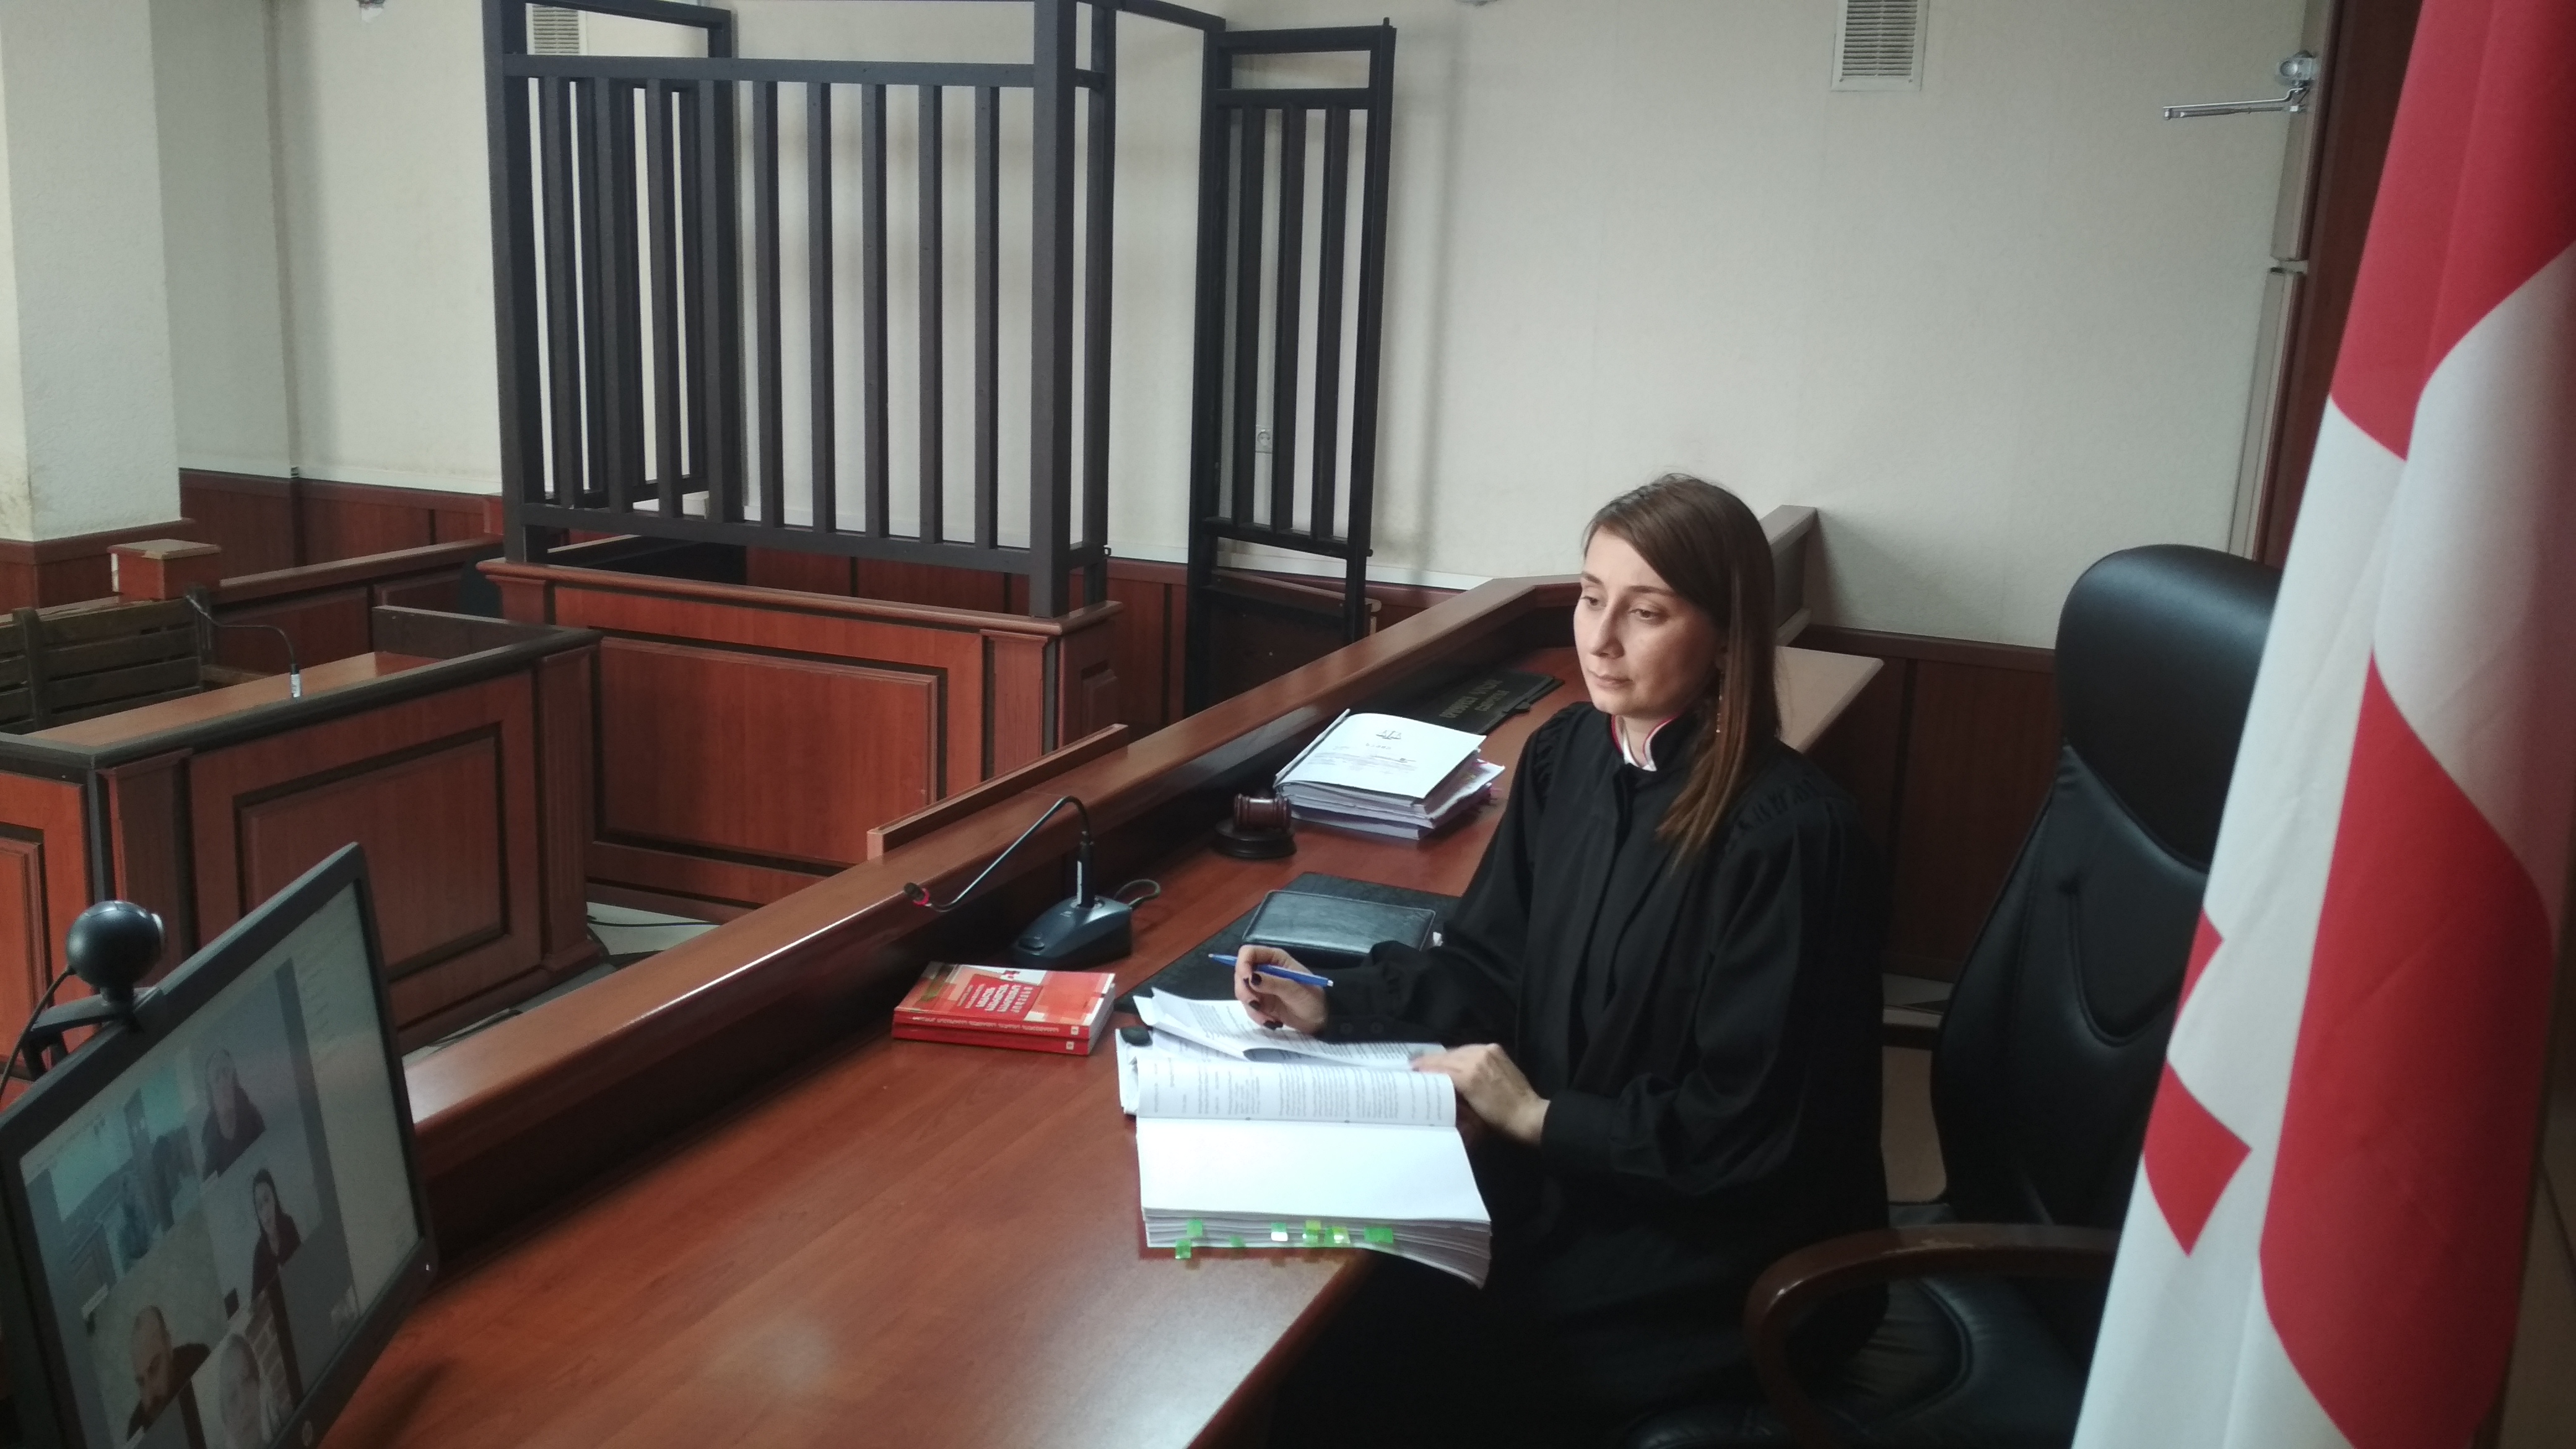 ქუთაისის საქალაქო სასამართლოში სამართალწარმოება დისტანციურად მიმდინარეობს